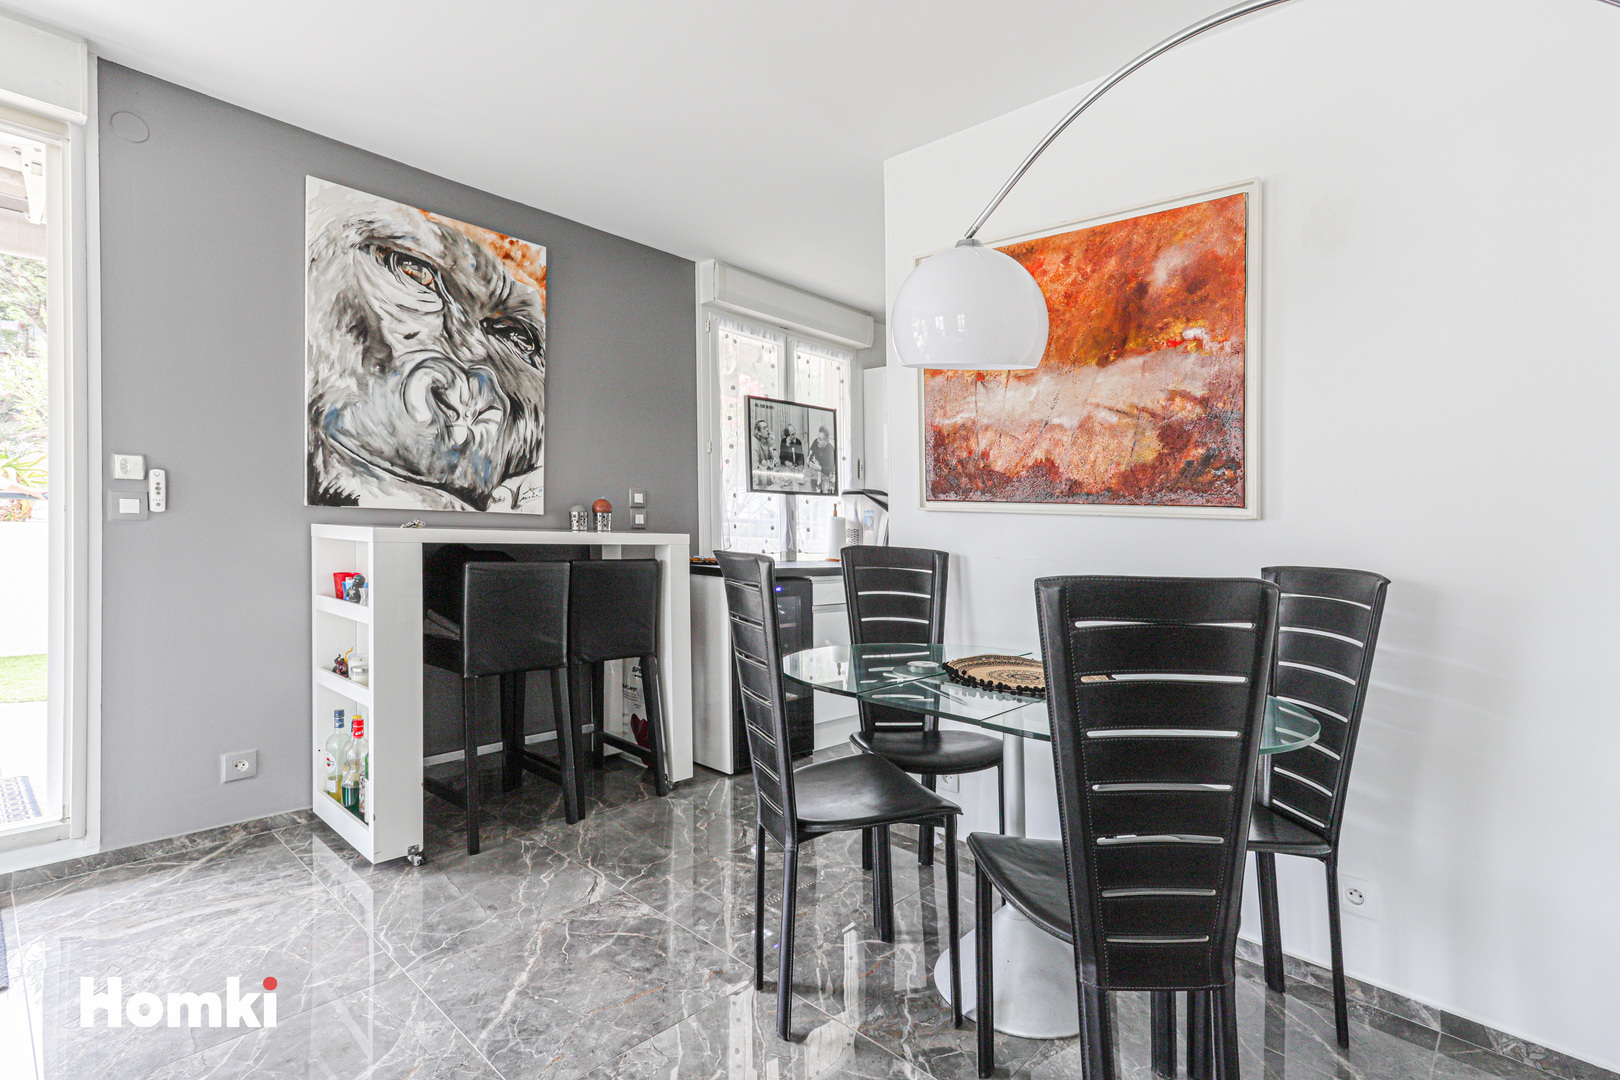 Homki - Vente Appartement  de 98.0 m² à Cagnes-sur-Mer 06800